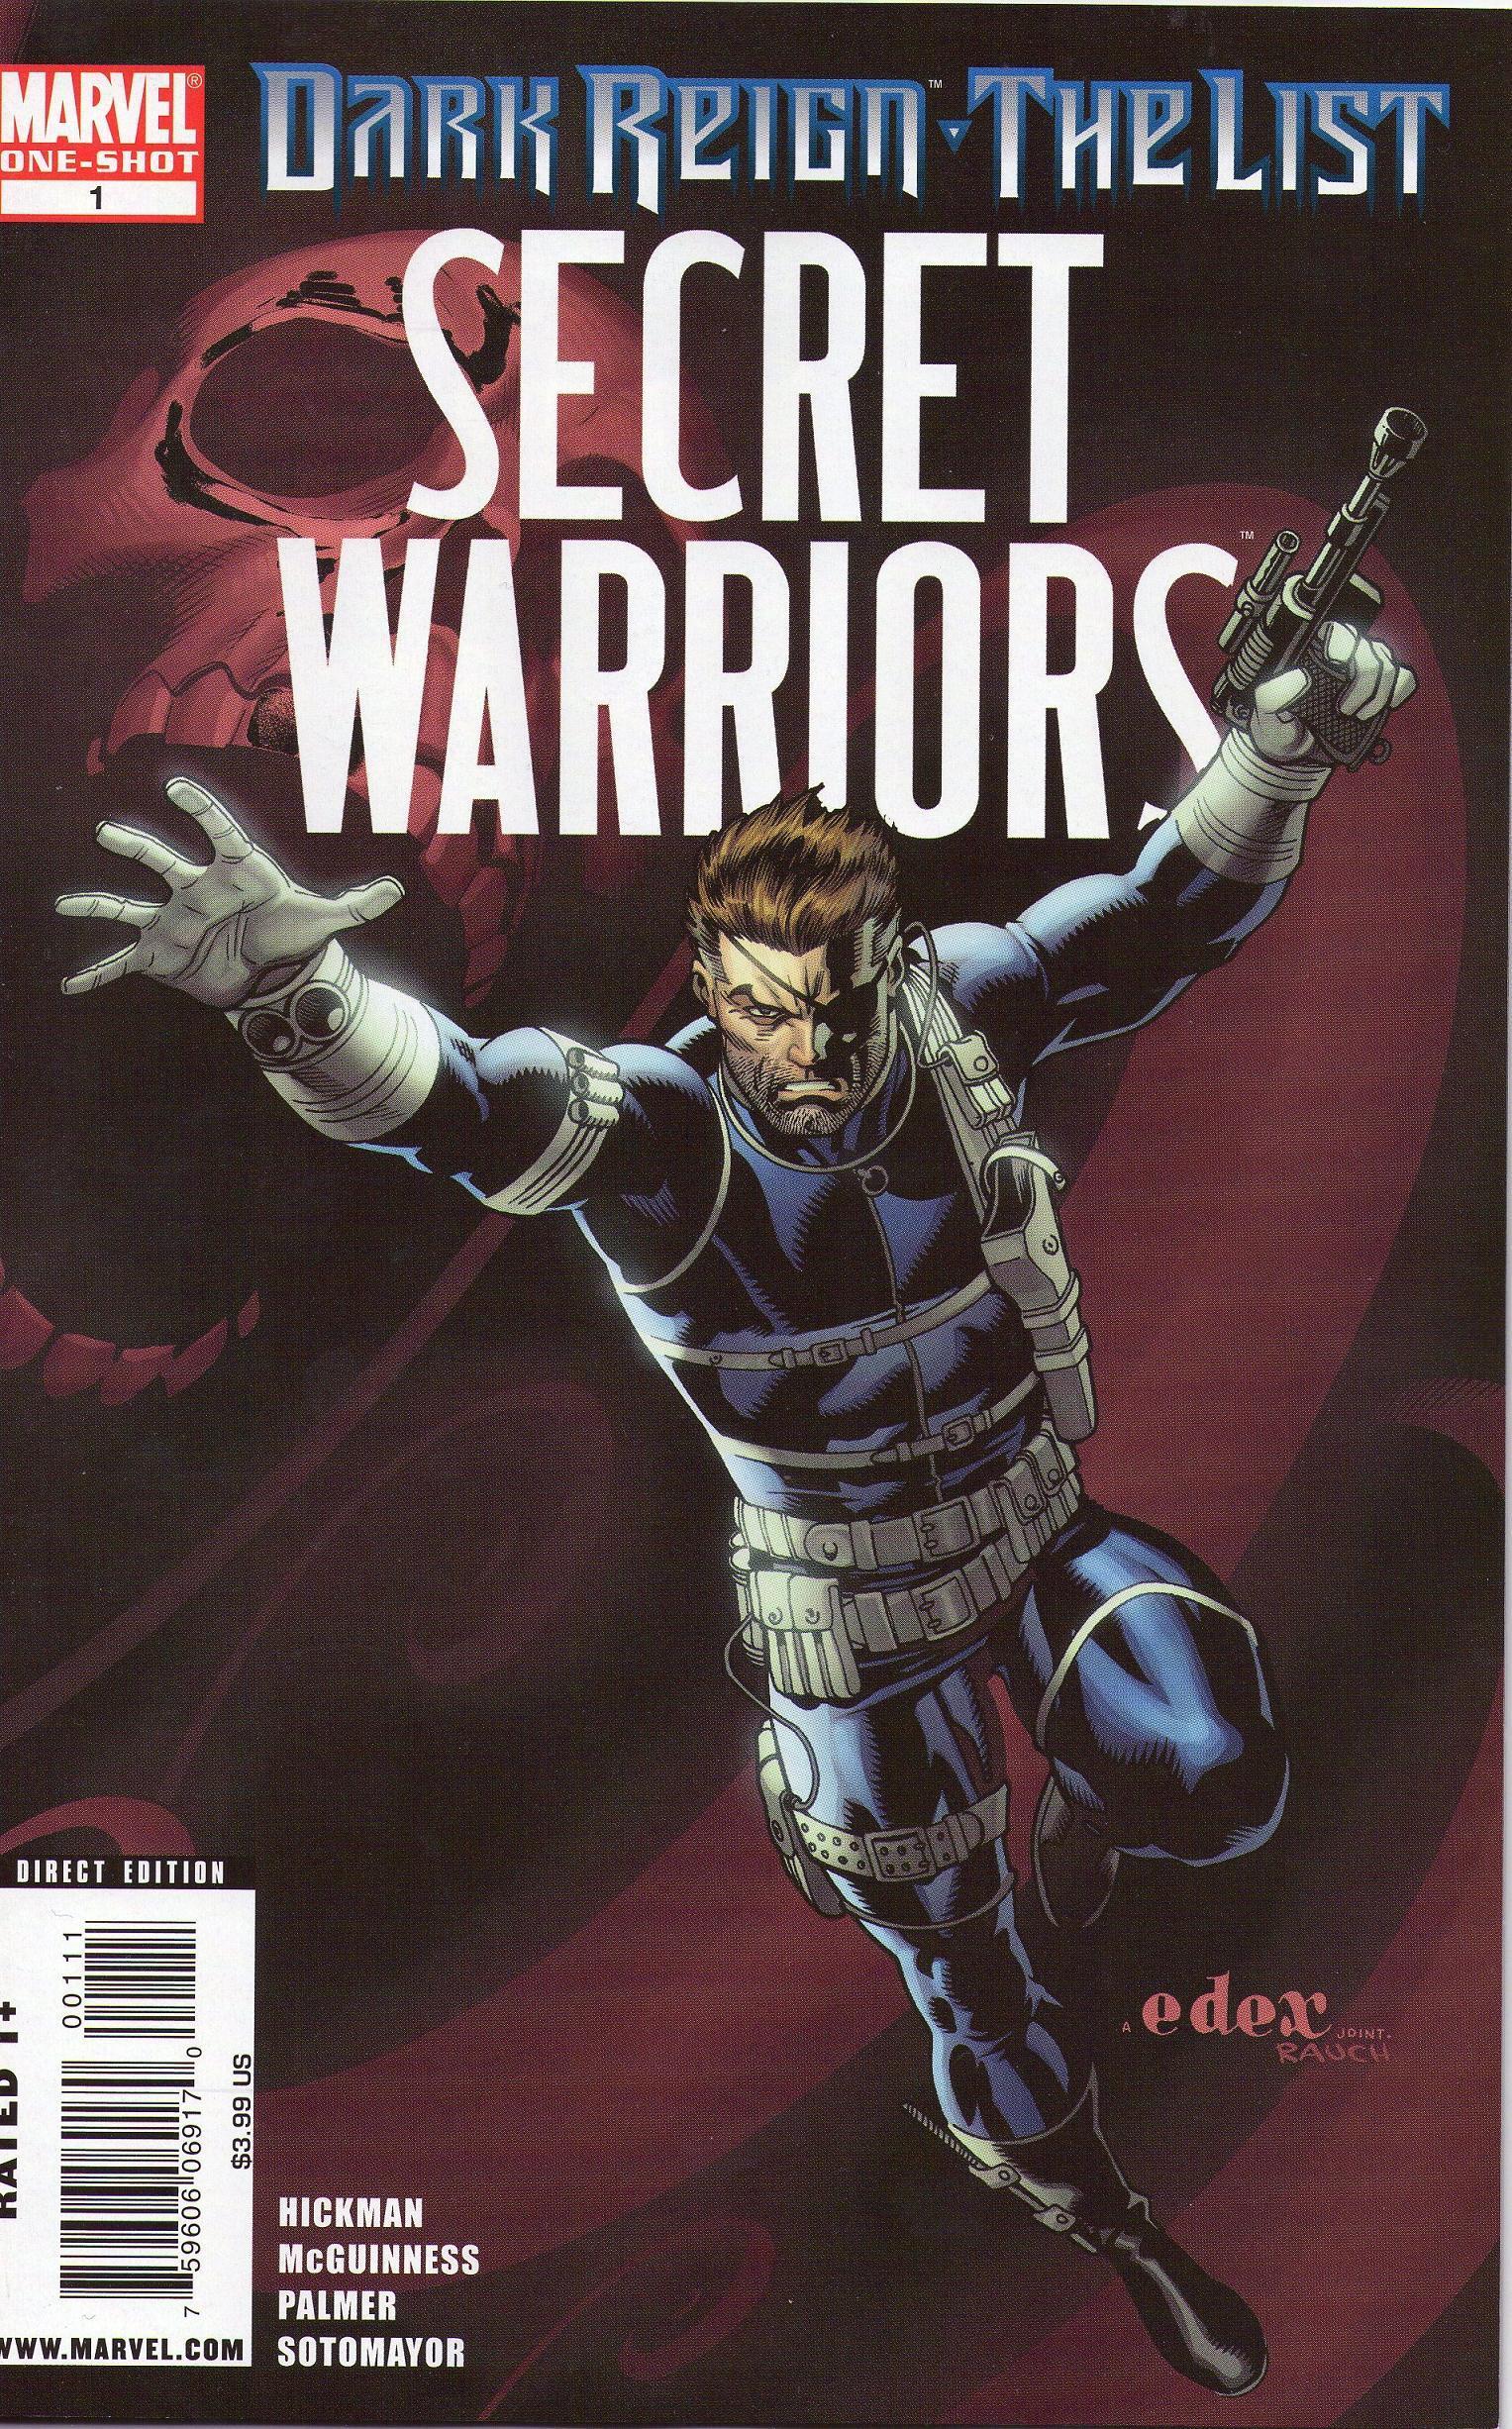 Dark Reign: The List - Secret Warriors Vol. 1 #1